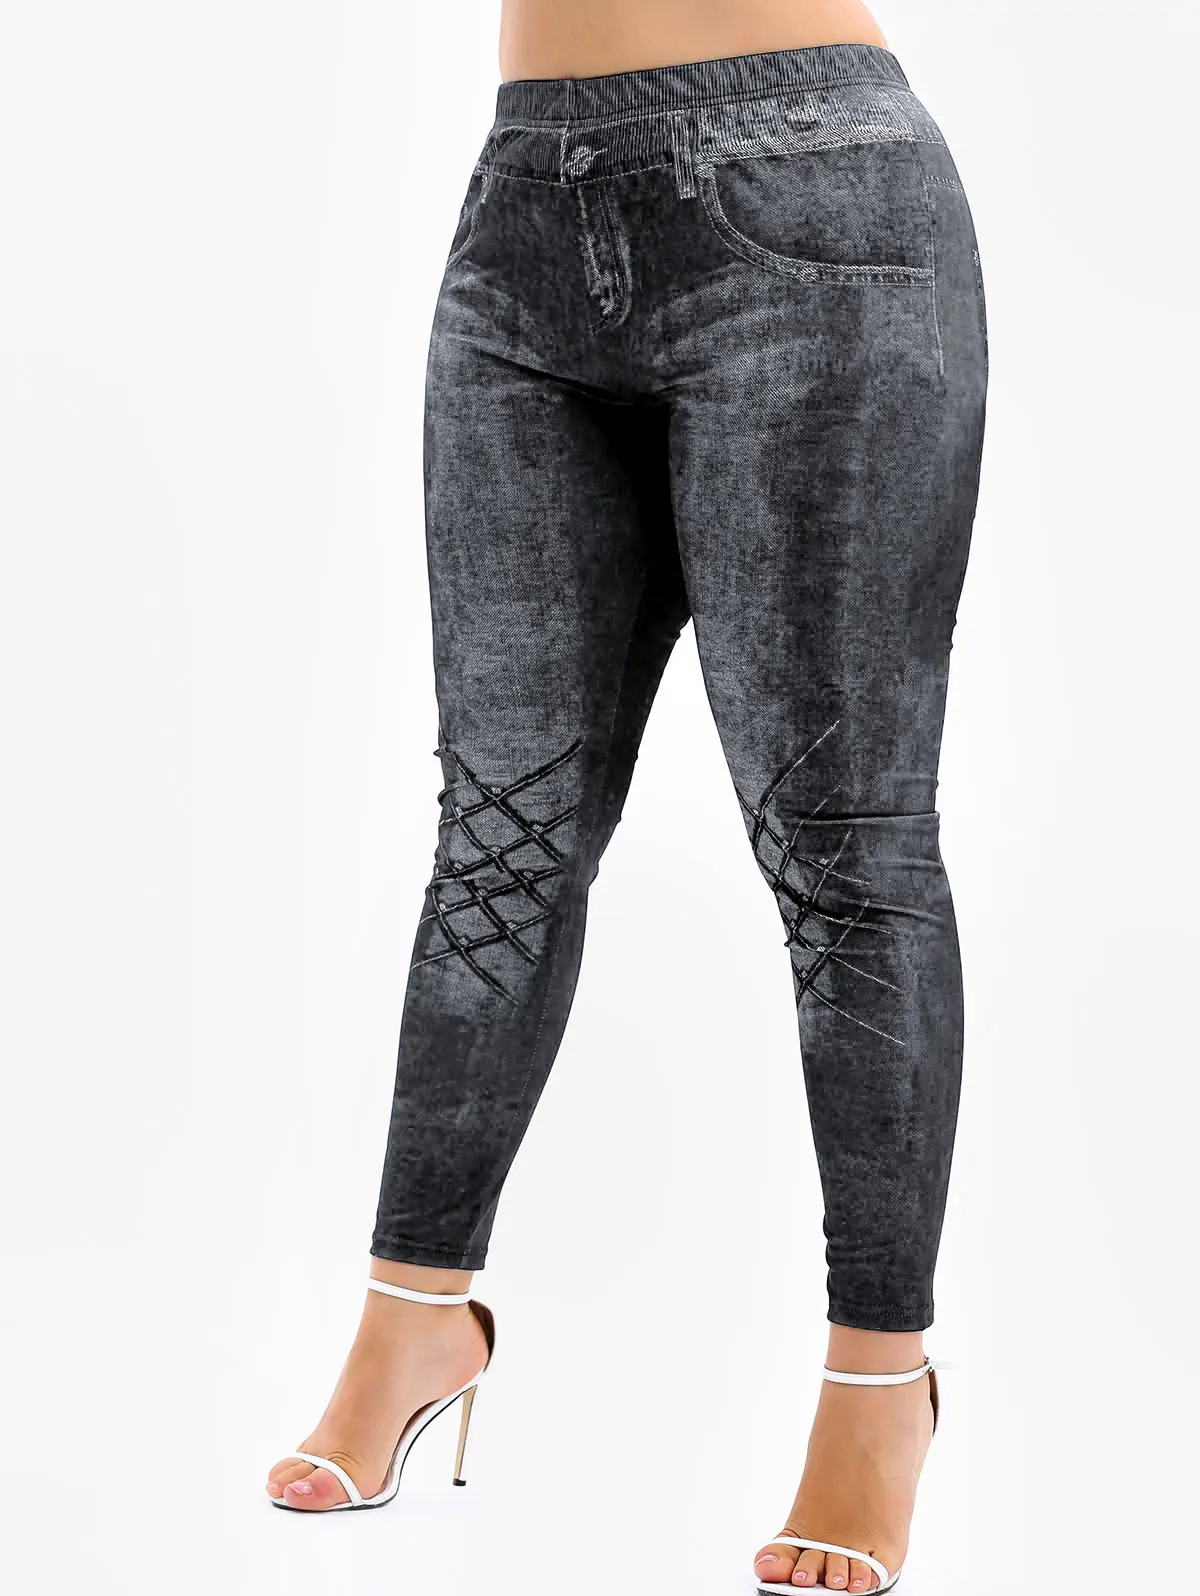 Rosegal размера плюс 3D джинсы с принтом обтягивающие леггинсы с высокой талией женские сексуальные леггинсы для фитнеса с эффектом пуш-ап 5XL штаны большого размера Femme